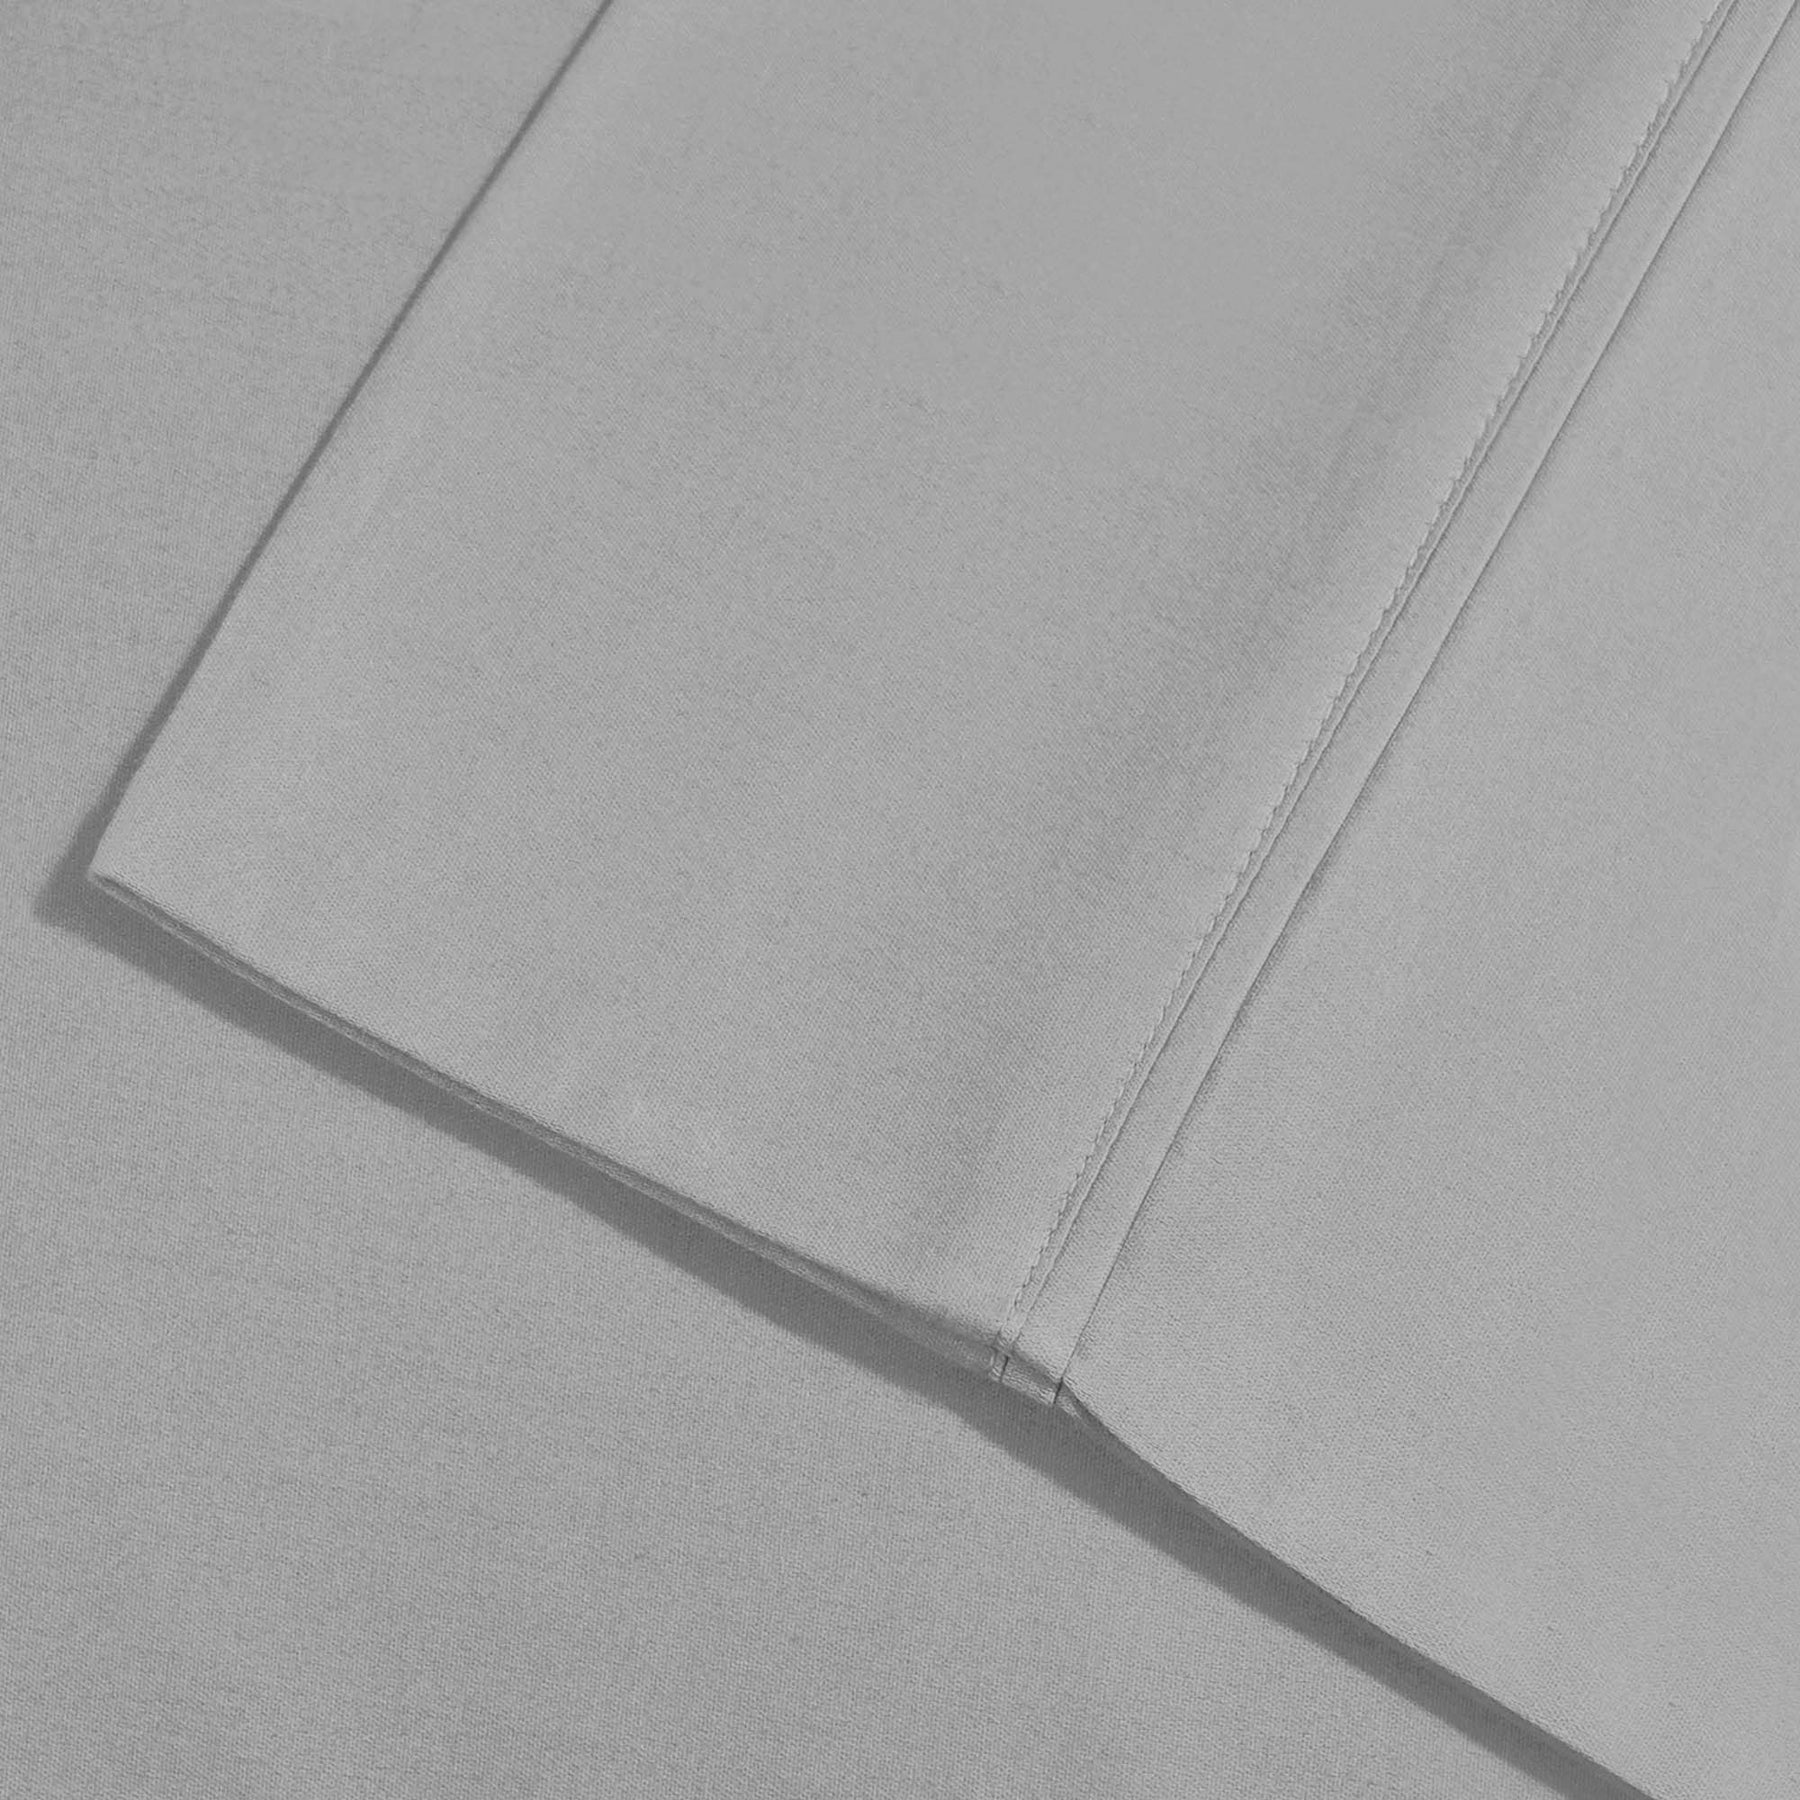 Superior Solid Deep Pocket Cotton Blend Bed Sheet Set - Light Grey